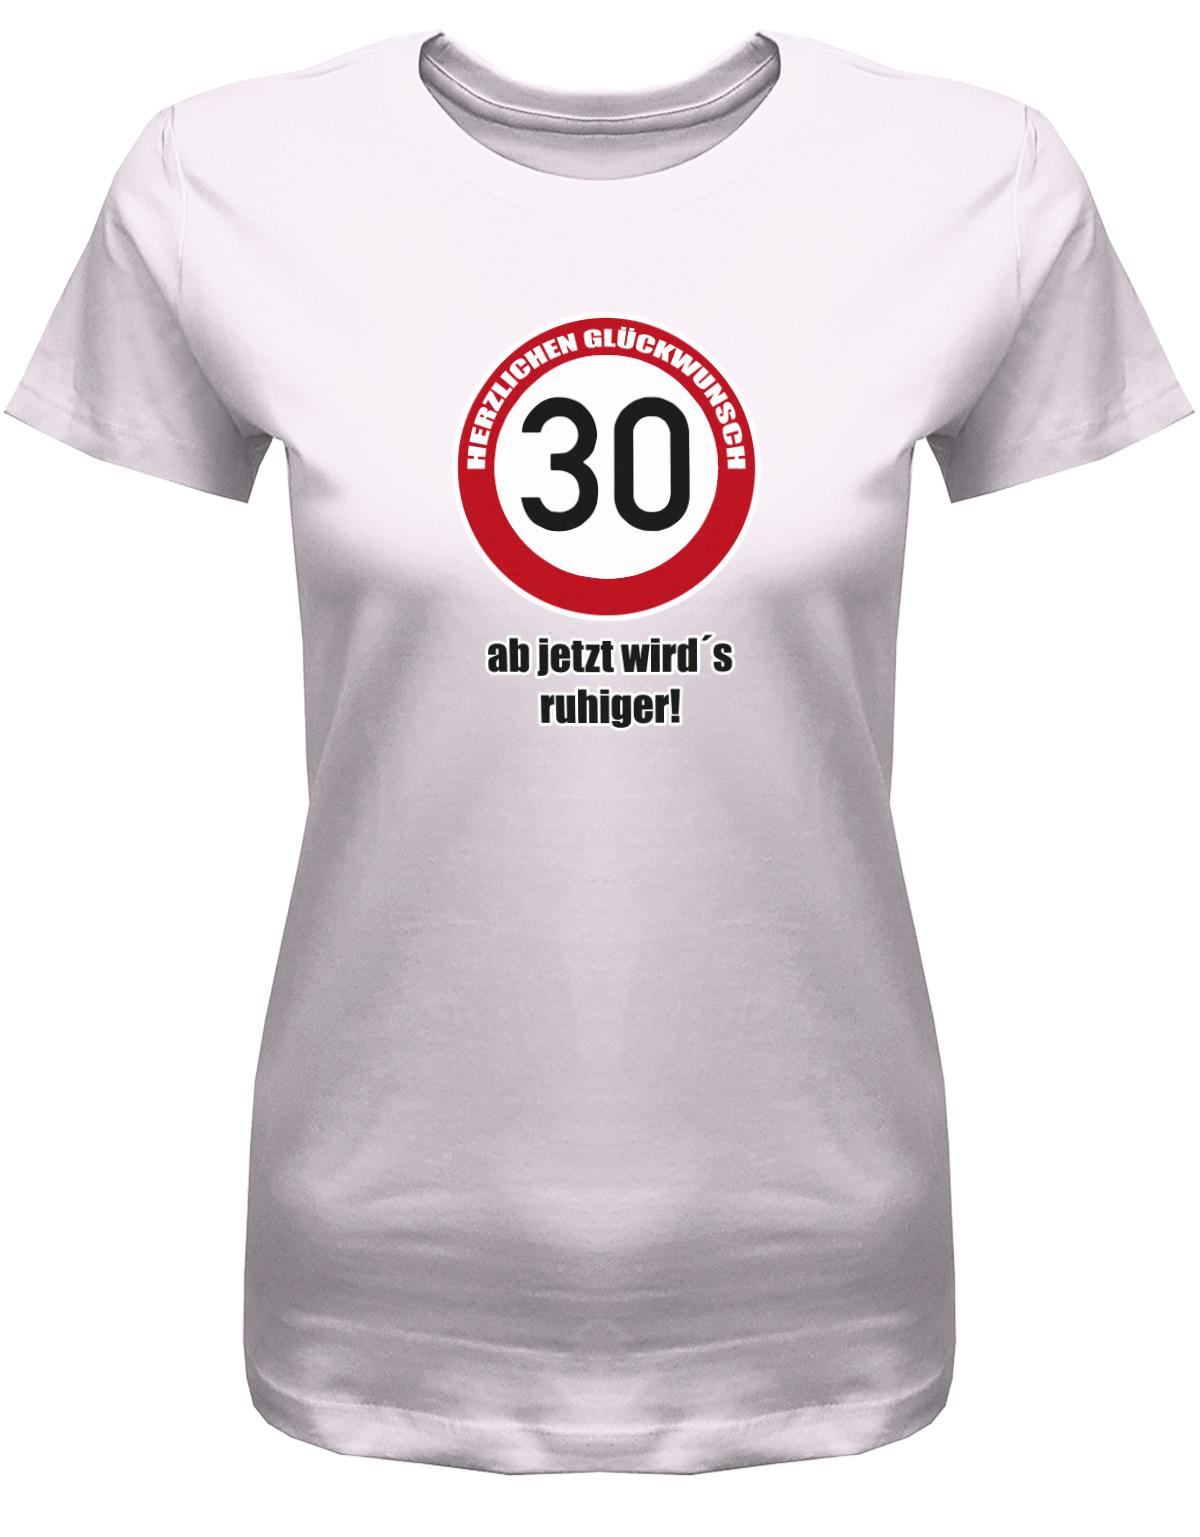 Lustiges T-Shirt zum 30. Geburtstag für die Frau Bedruckt mit Herzlichen Glückwunsch 30 Verkehrsschild ab jetzt wird’s ruhiger.  Rosa